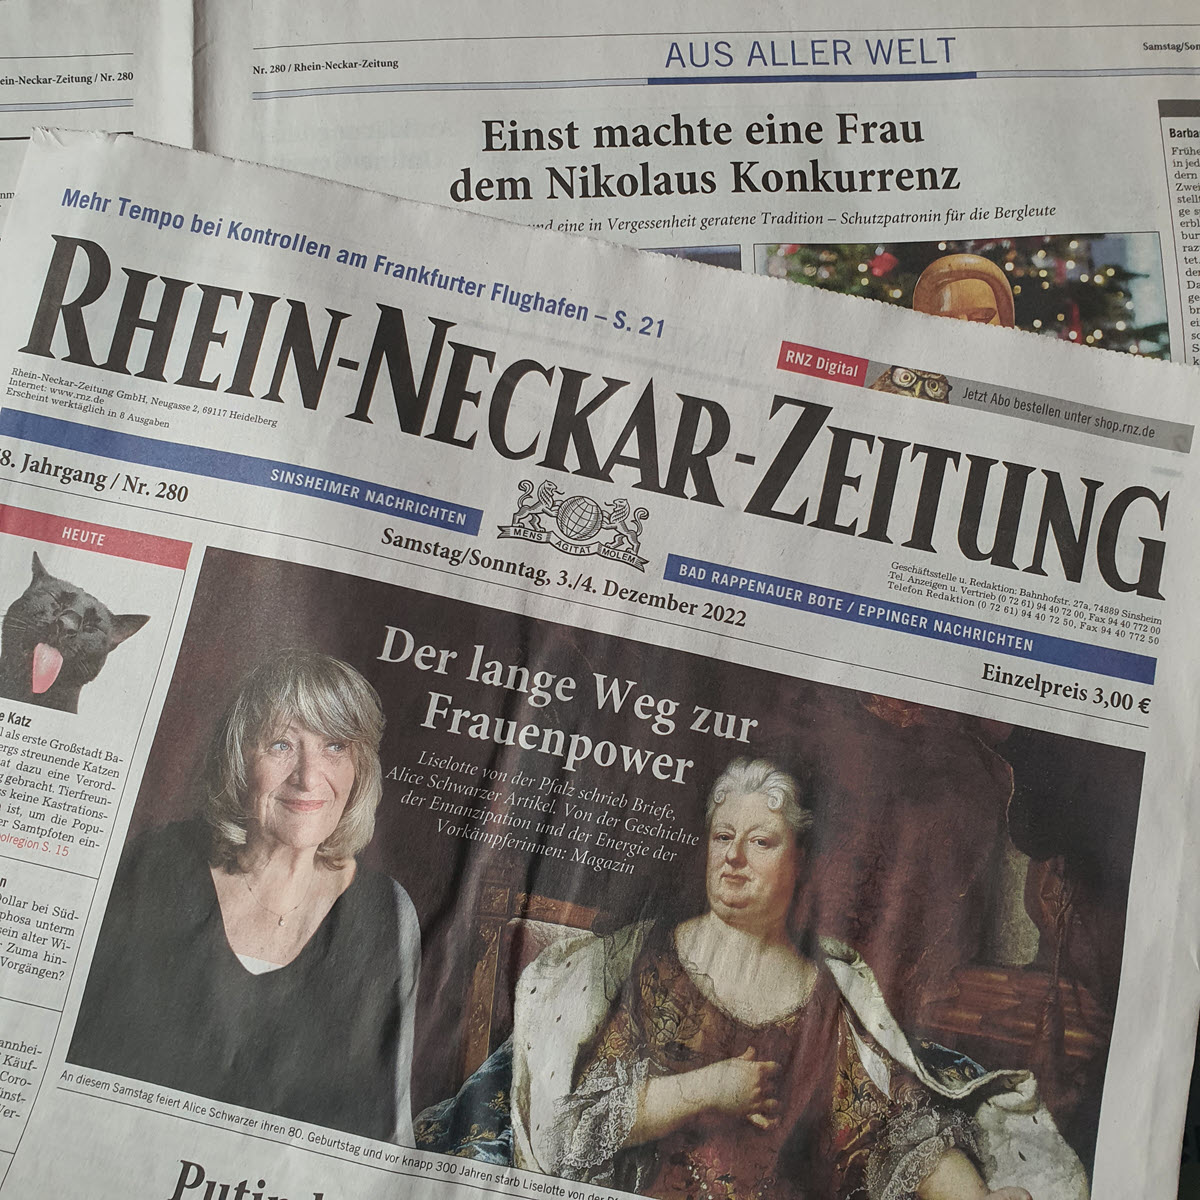 Rhein-Neckar-Zeitung im Dezember 2022 | Foto: Dr. Clemens Kriesel